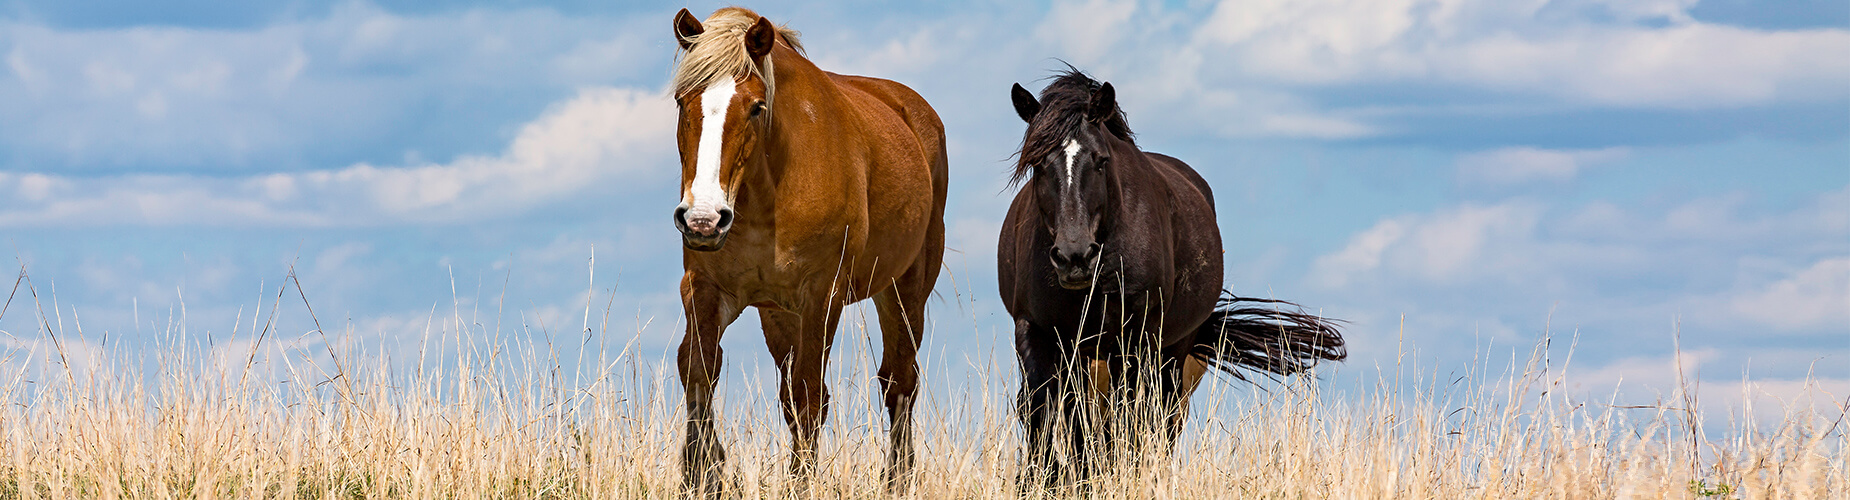 Zwei Pferde in der Landschaft